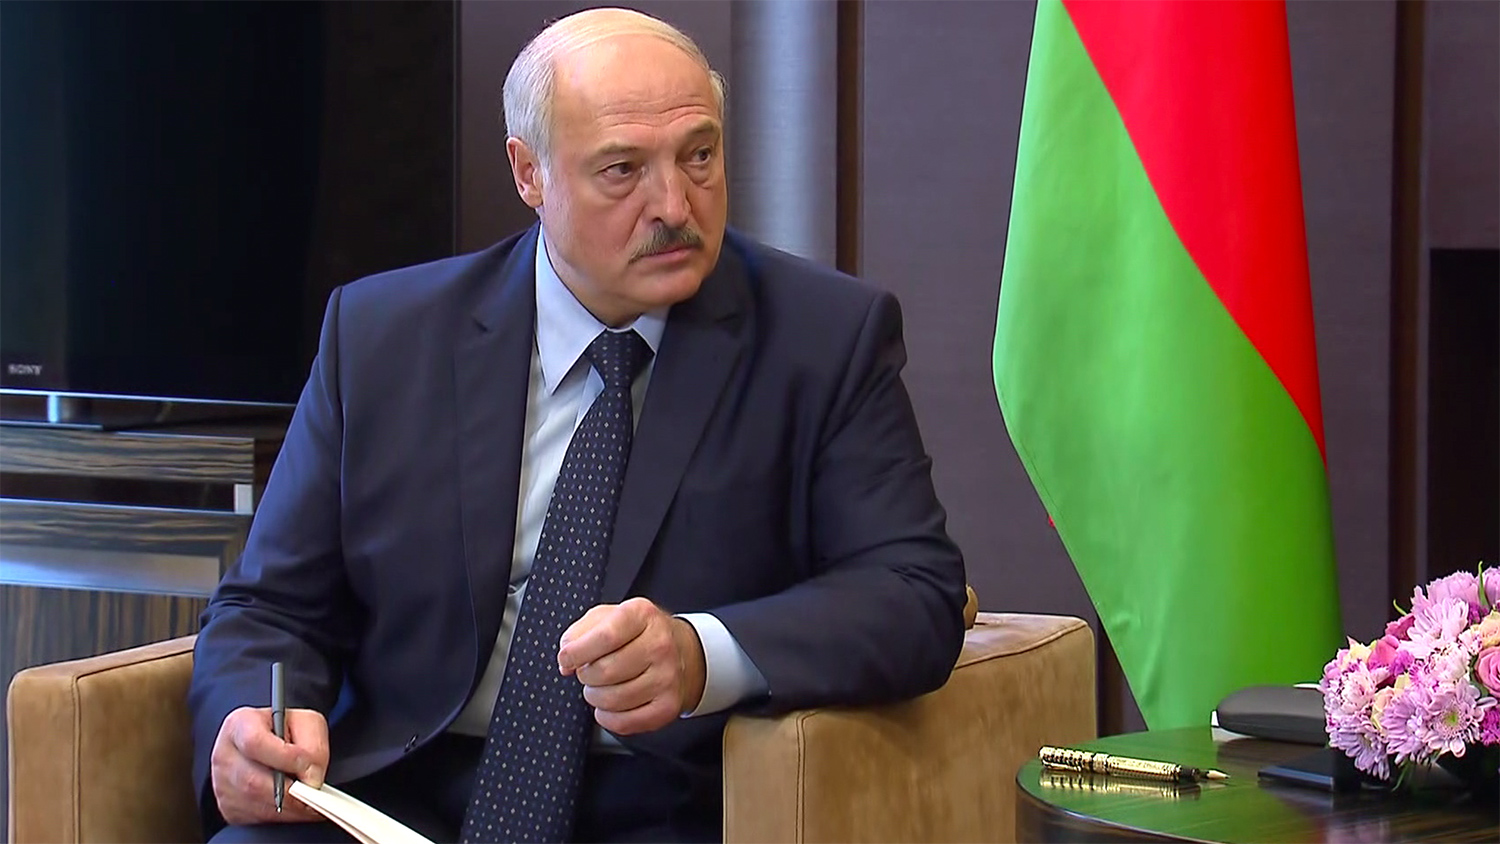 Москва не доверяет никому, кроме Лукашенко, а все альтернативные политики находятся в тюрьме  — советник Тихановской